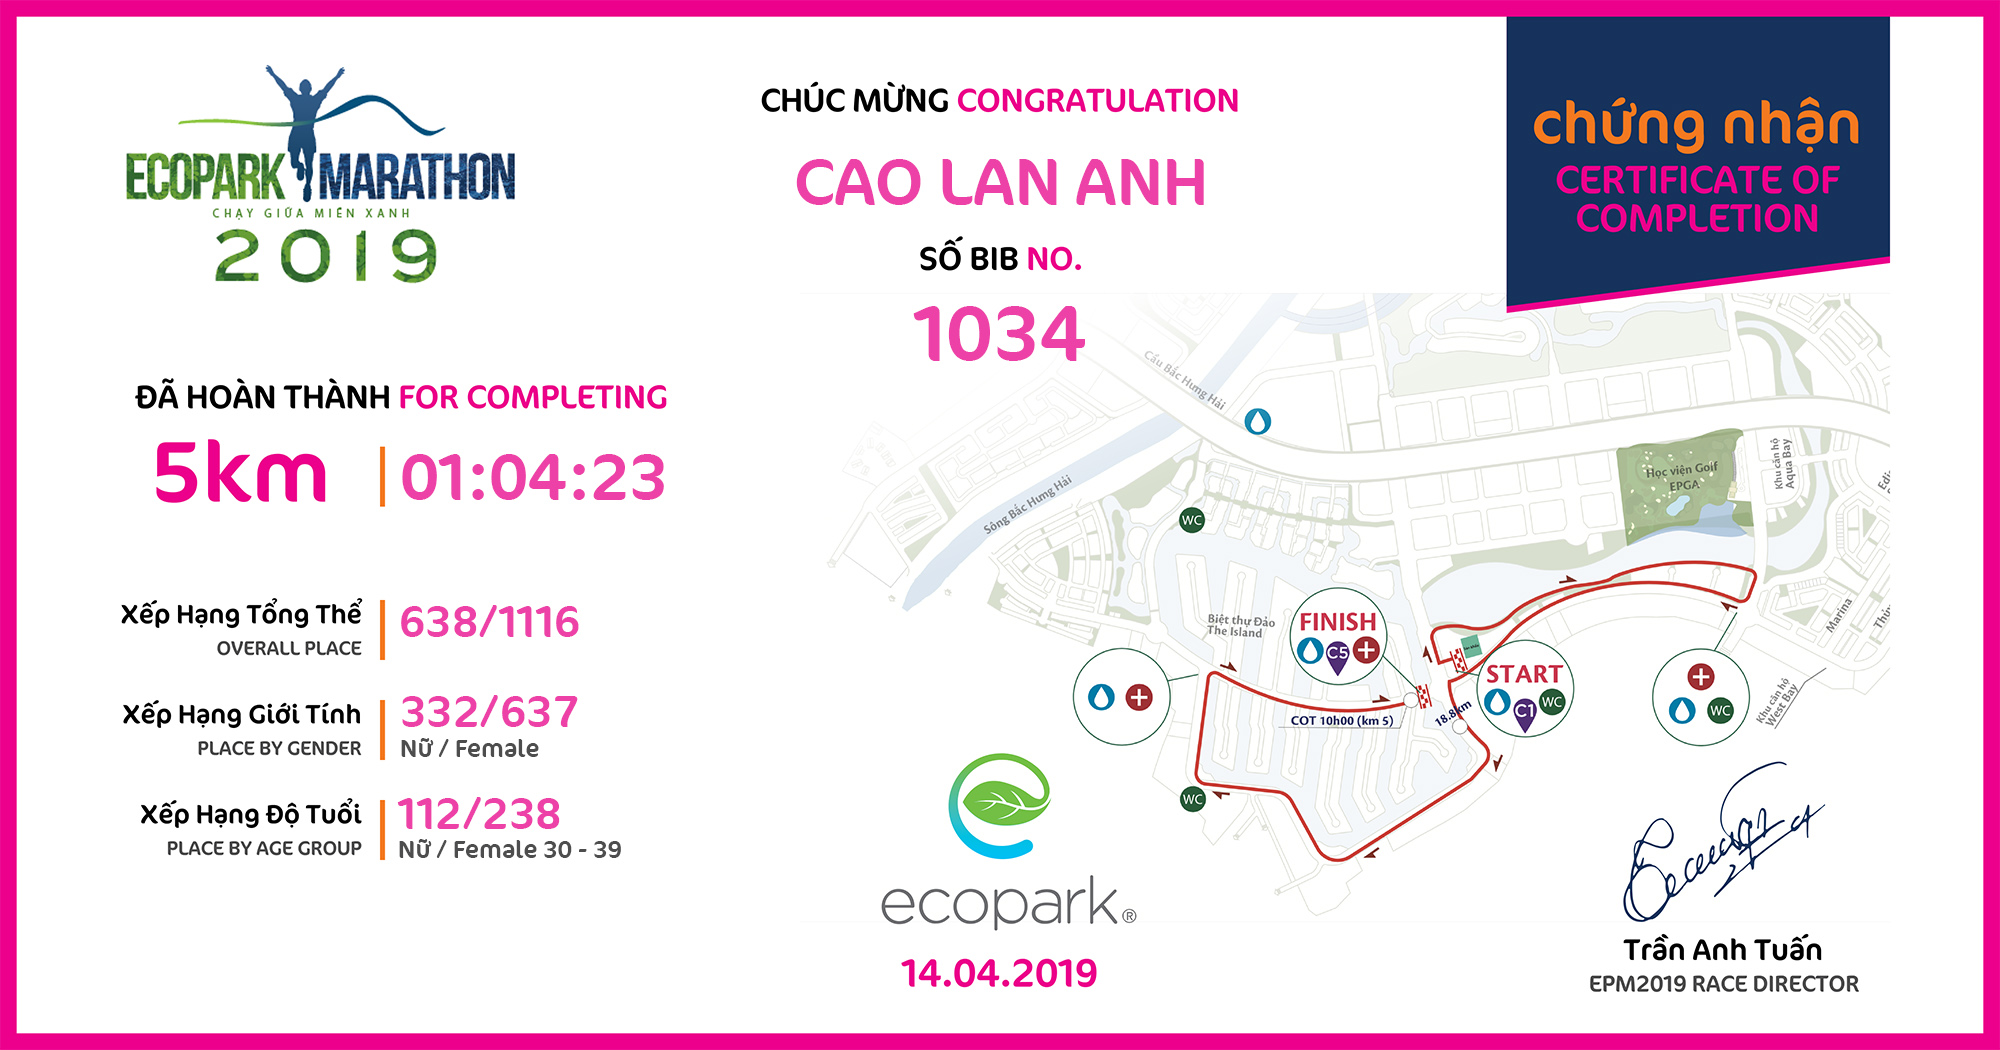 1034 - Cao Lan Anh